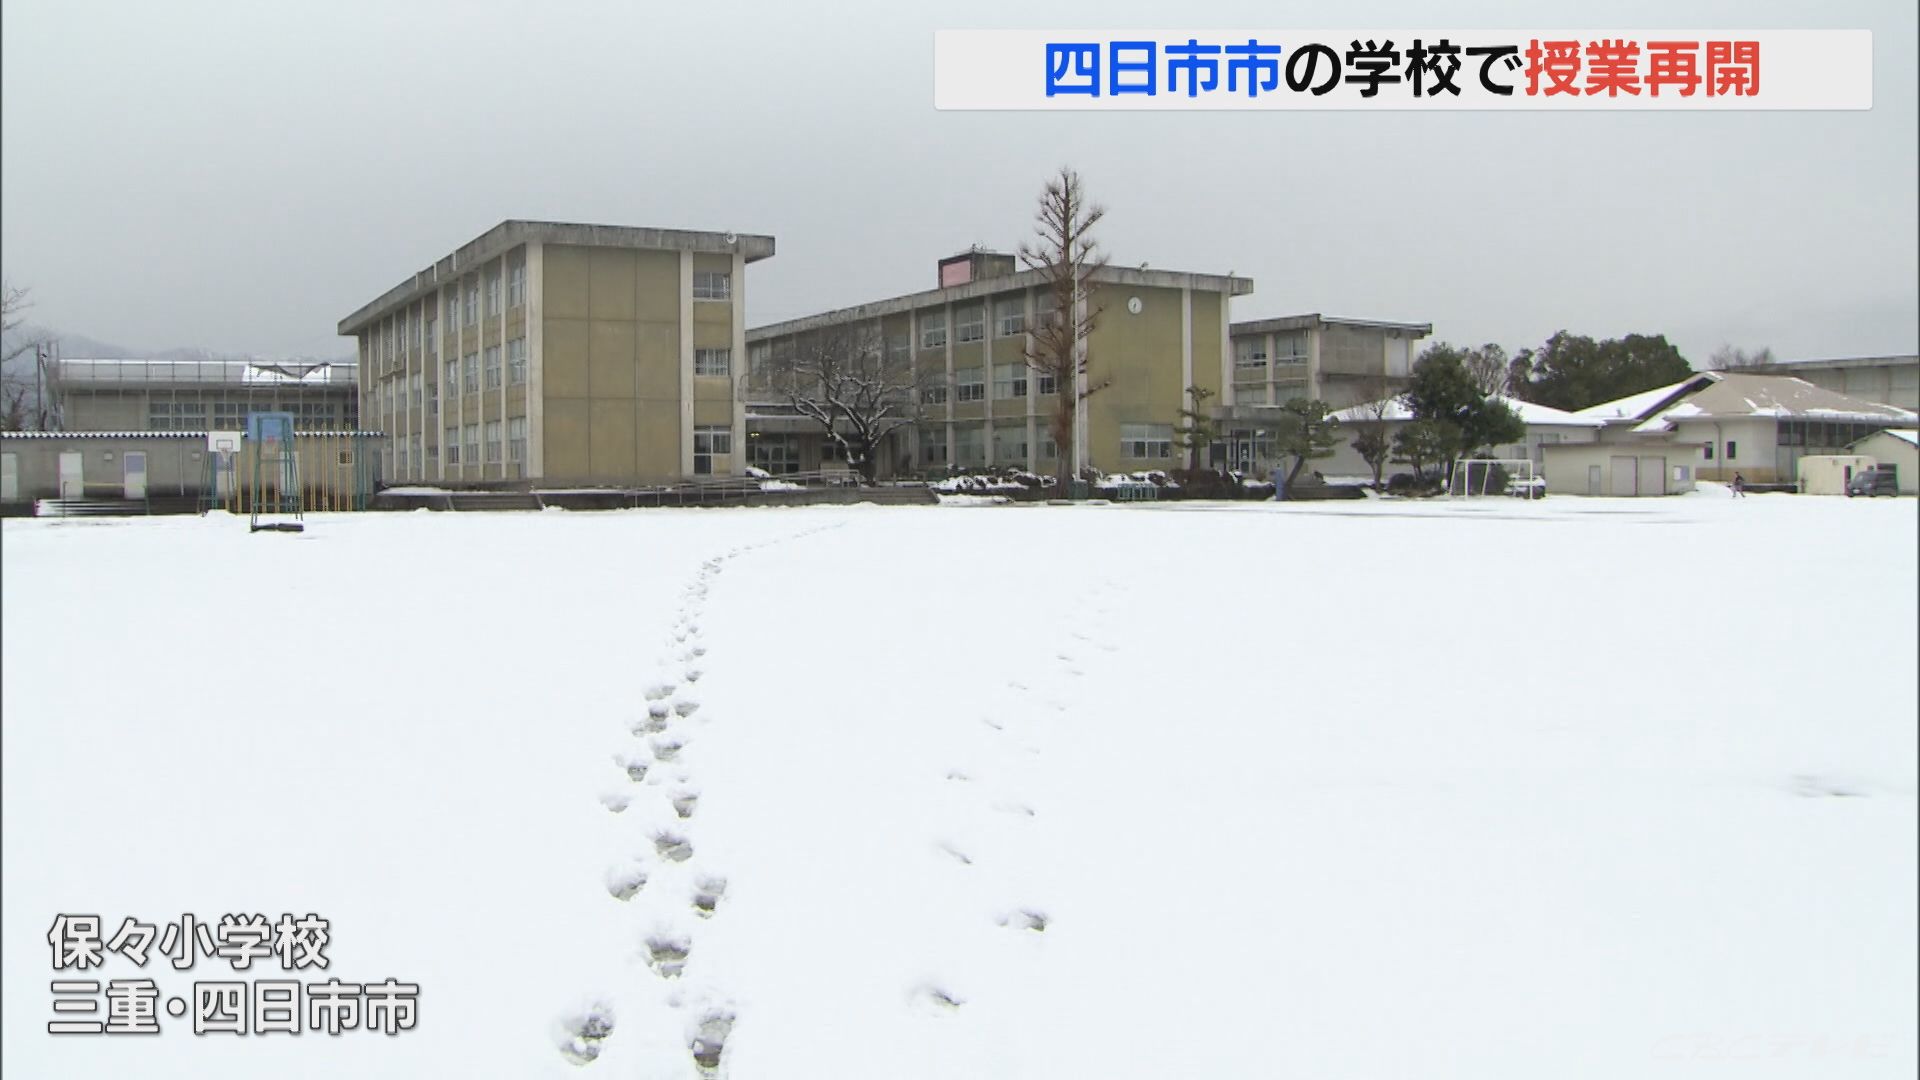 記録的な寒波…大雪で休校だったほとんどの小中学校で2日ぶりに授業が再開 三重県四日市市